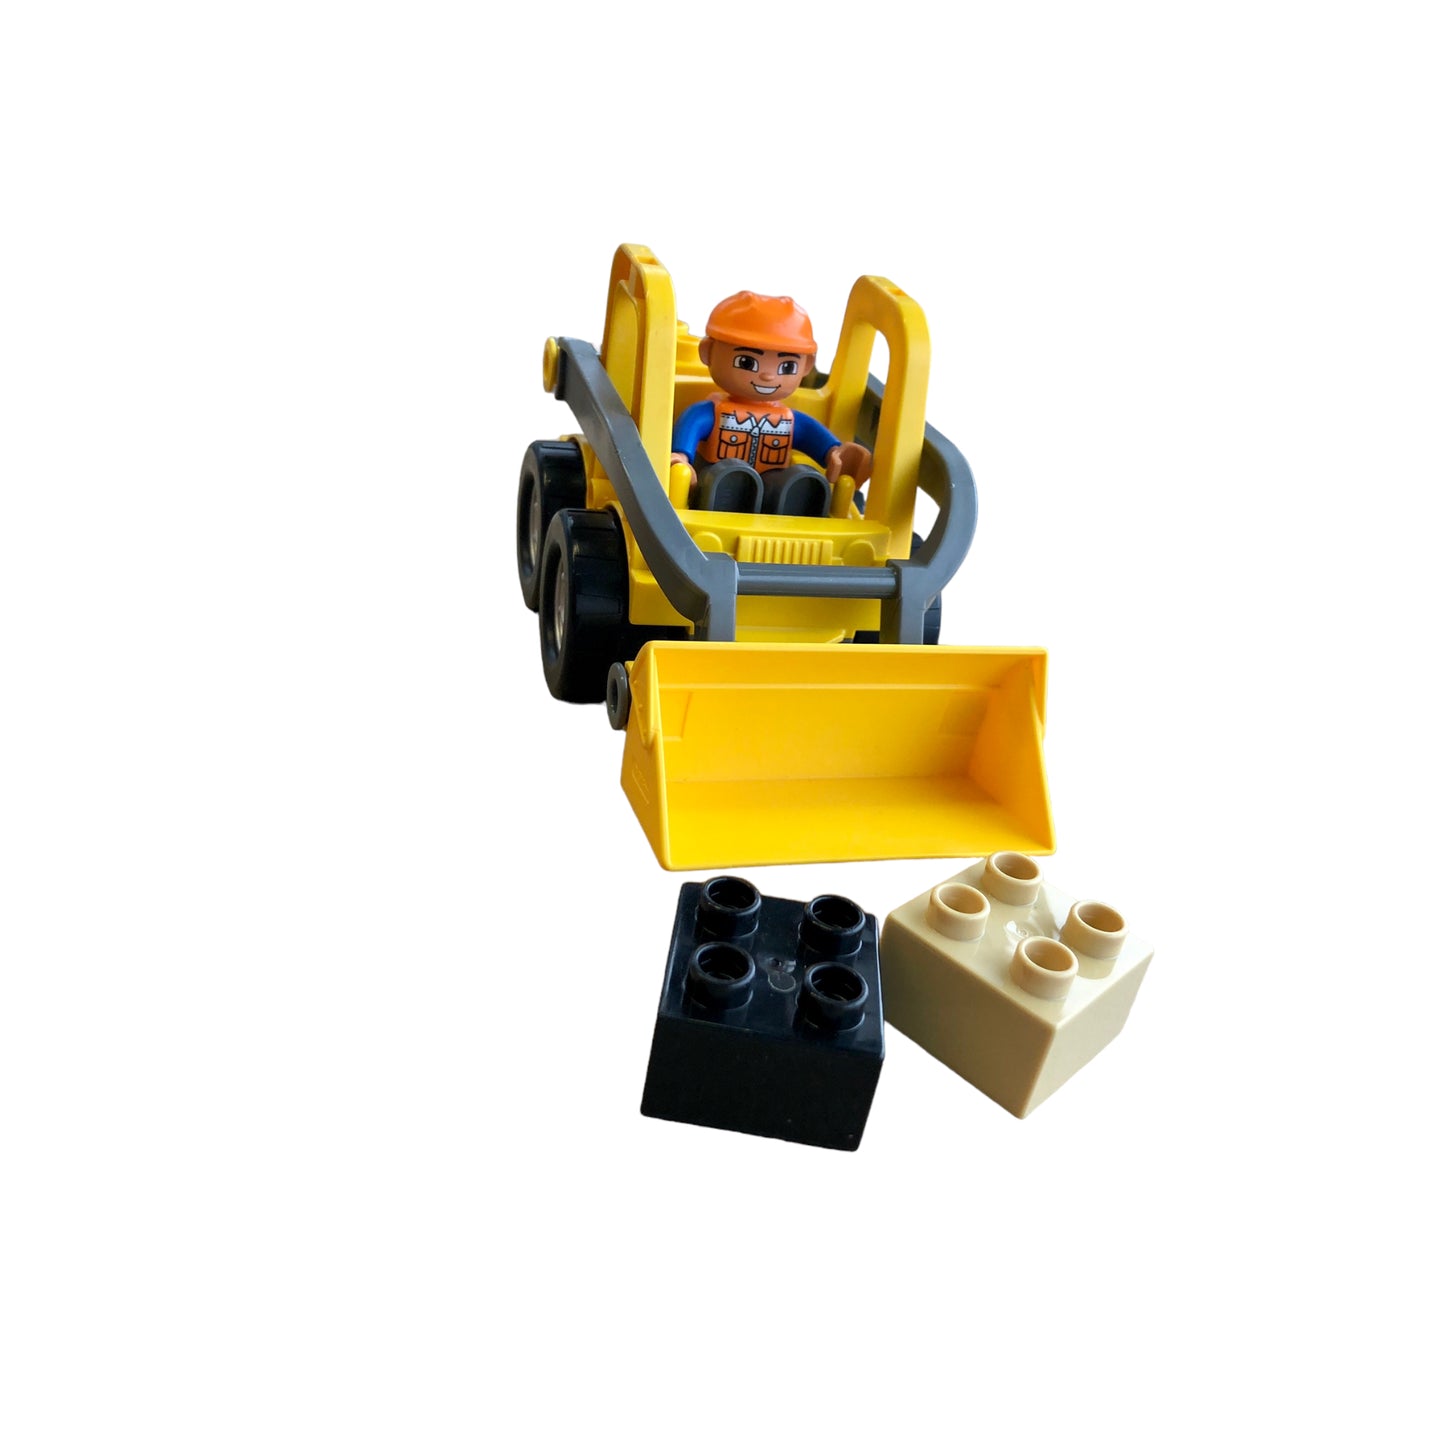 LEGO® Duplo 5650 Front Loader Digger